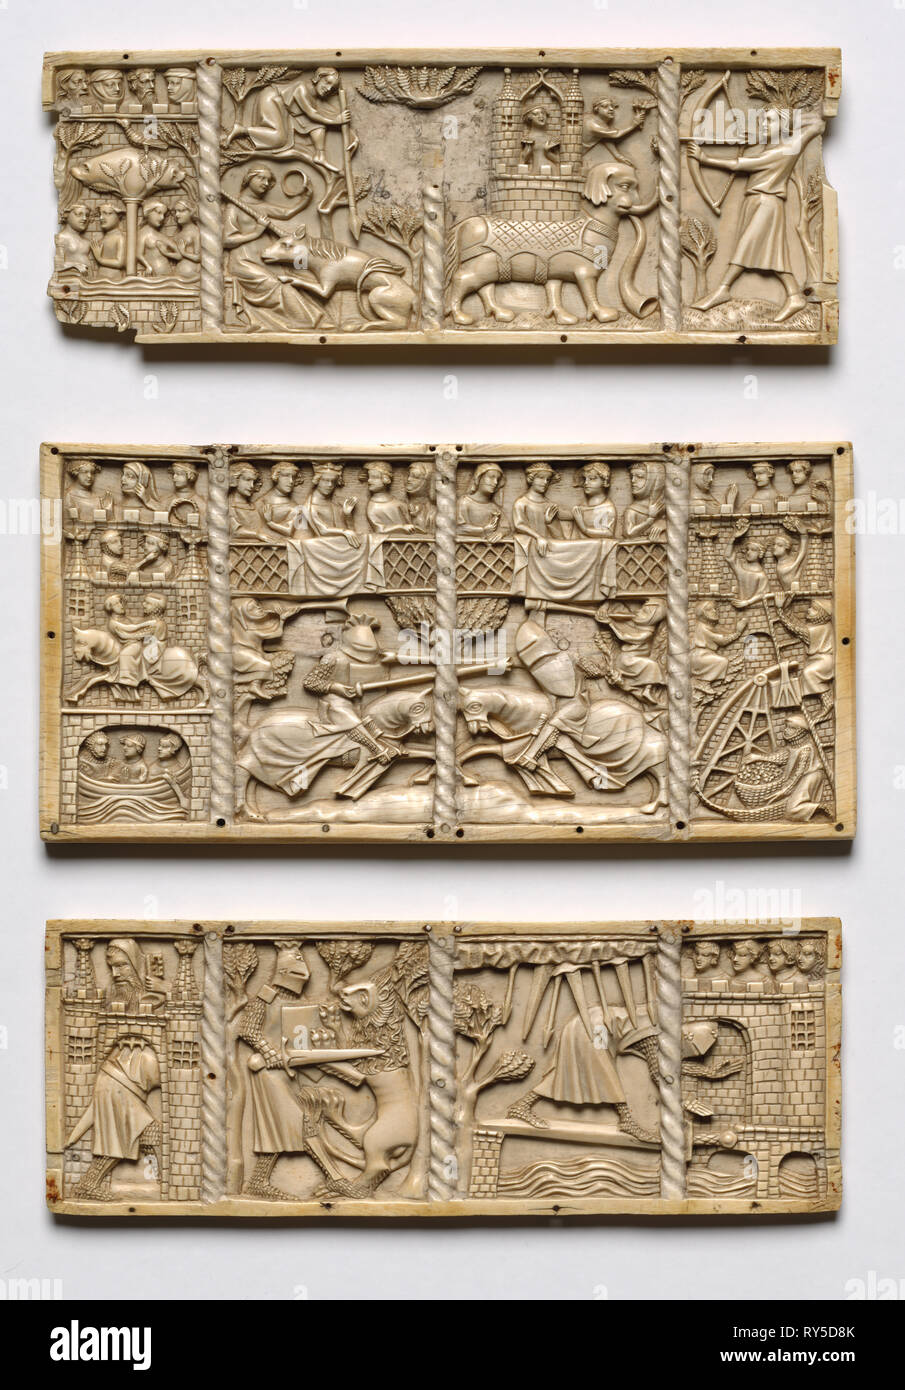 Set aus drei Platten aus einer Schatulle mit Szenen aus dem höfischen Romanzen, C. 1330-50. Frankreich, Lothringen?, Gotik, aus dem 14. Jahrhundert. Elfenbein; insgesamt: 13 x 26,2 x 1 cm (5 1/8 x 10 5/16 x 3/8 in Stockfoto